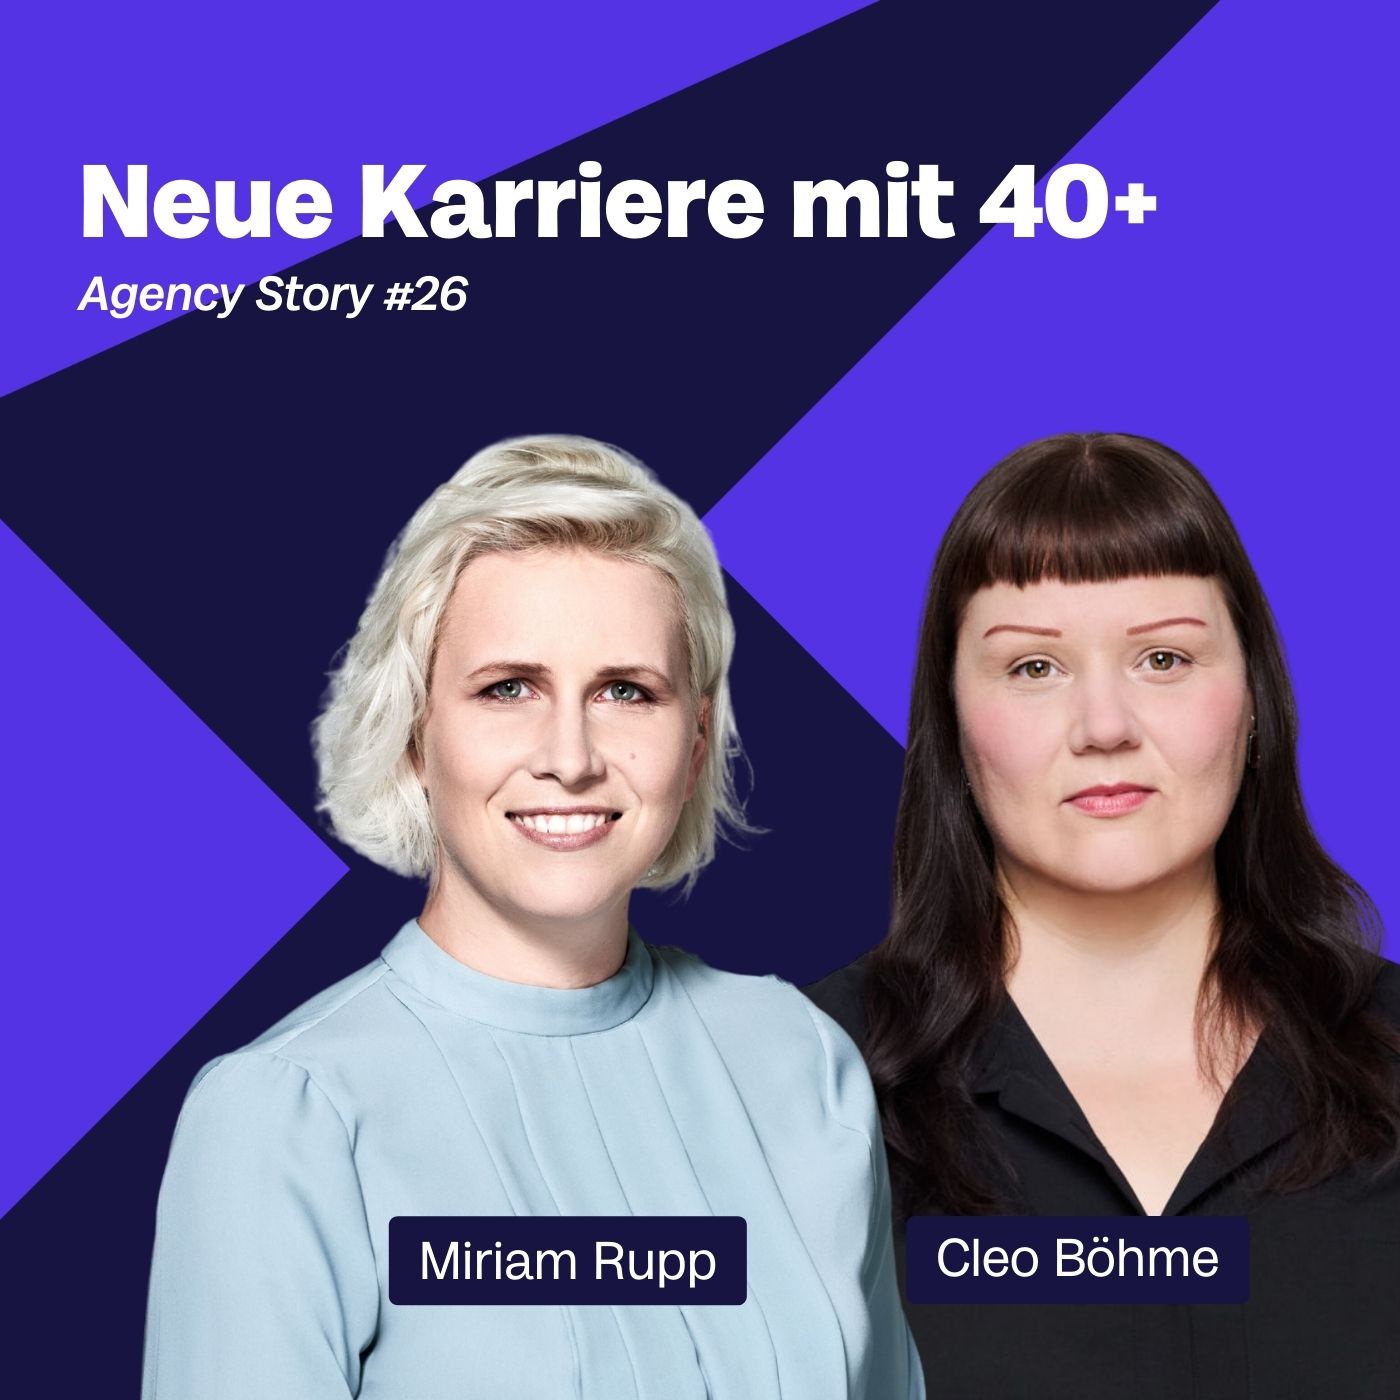 Agency Stories #26 – Neue Karriere mit 40+